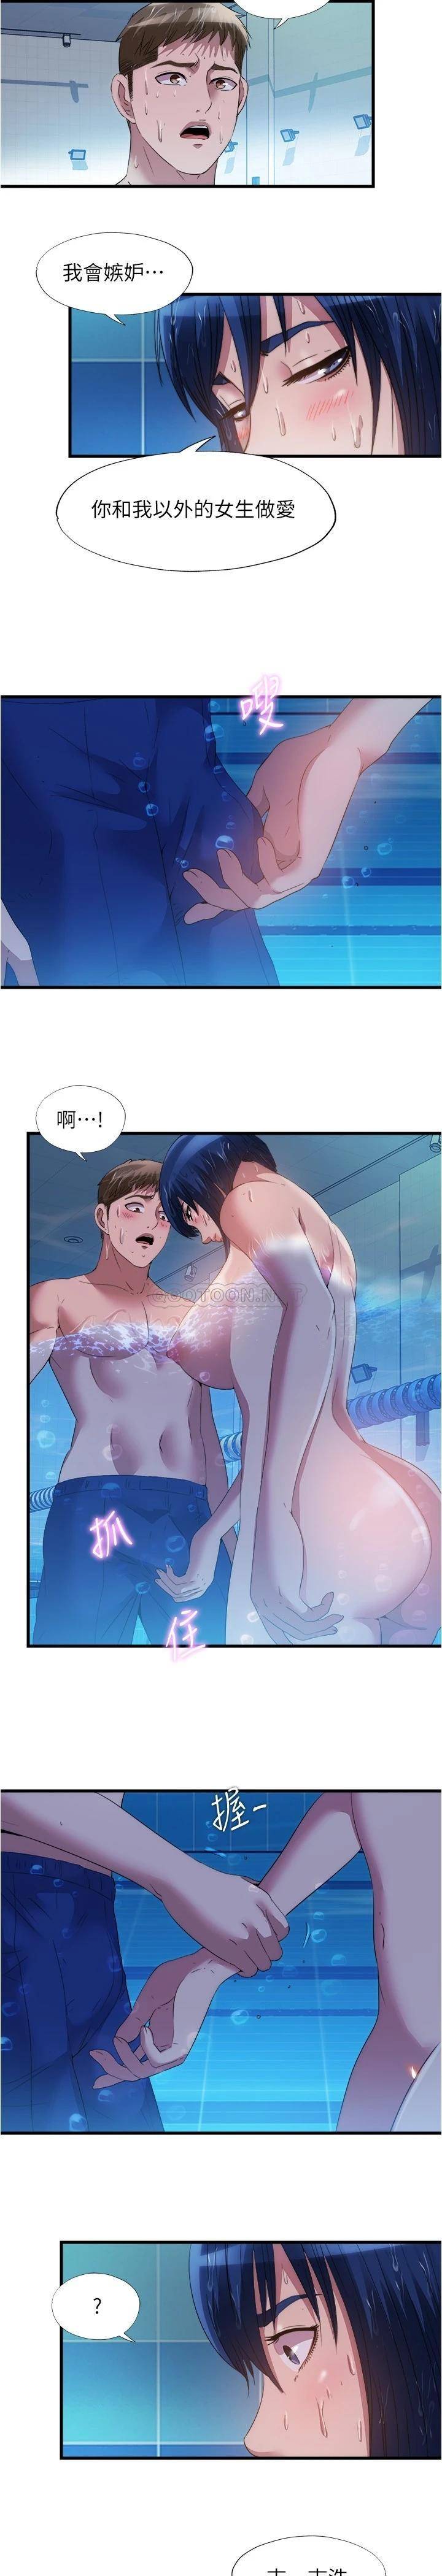 韩国污漫画 滿溢遊泳池 第78话在水里享受海茵姐的鲍鱼 2